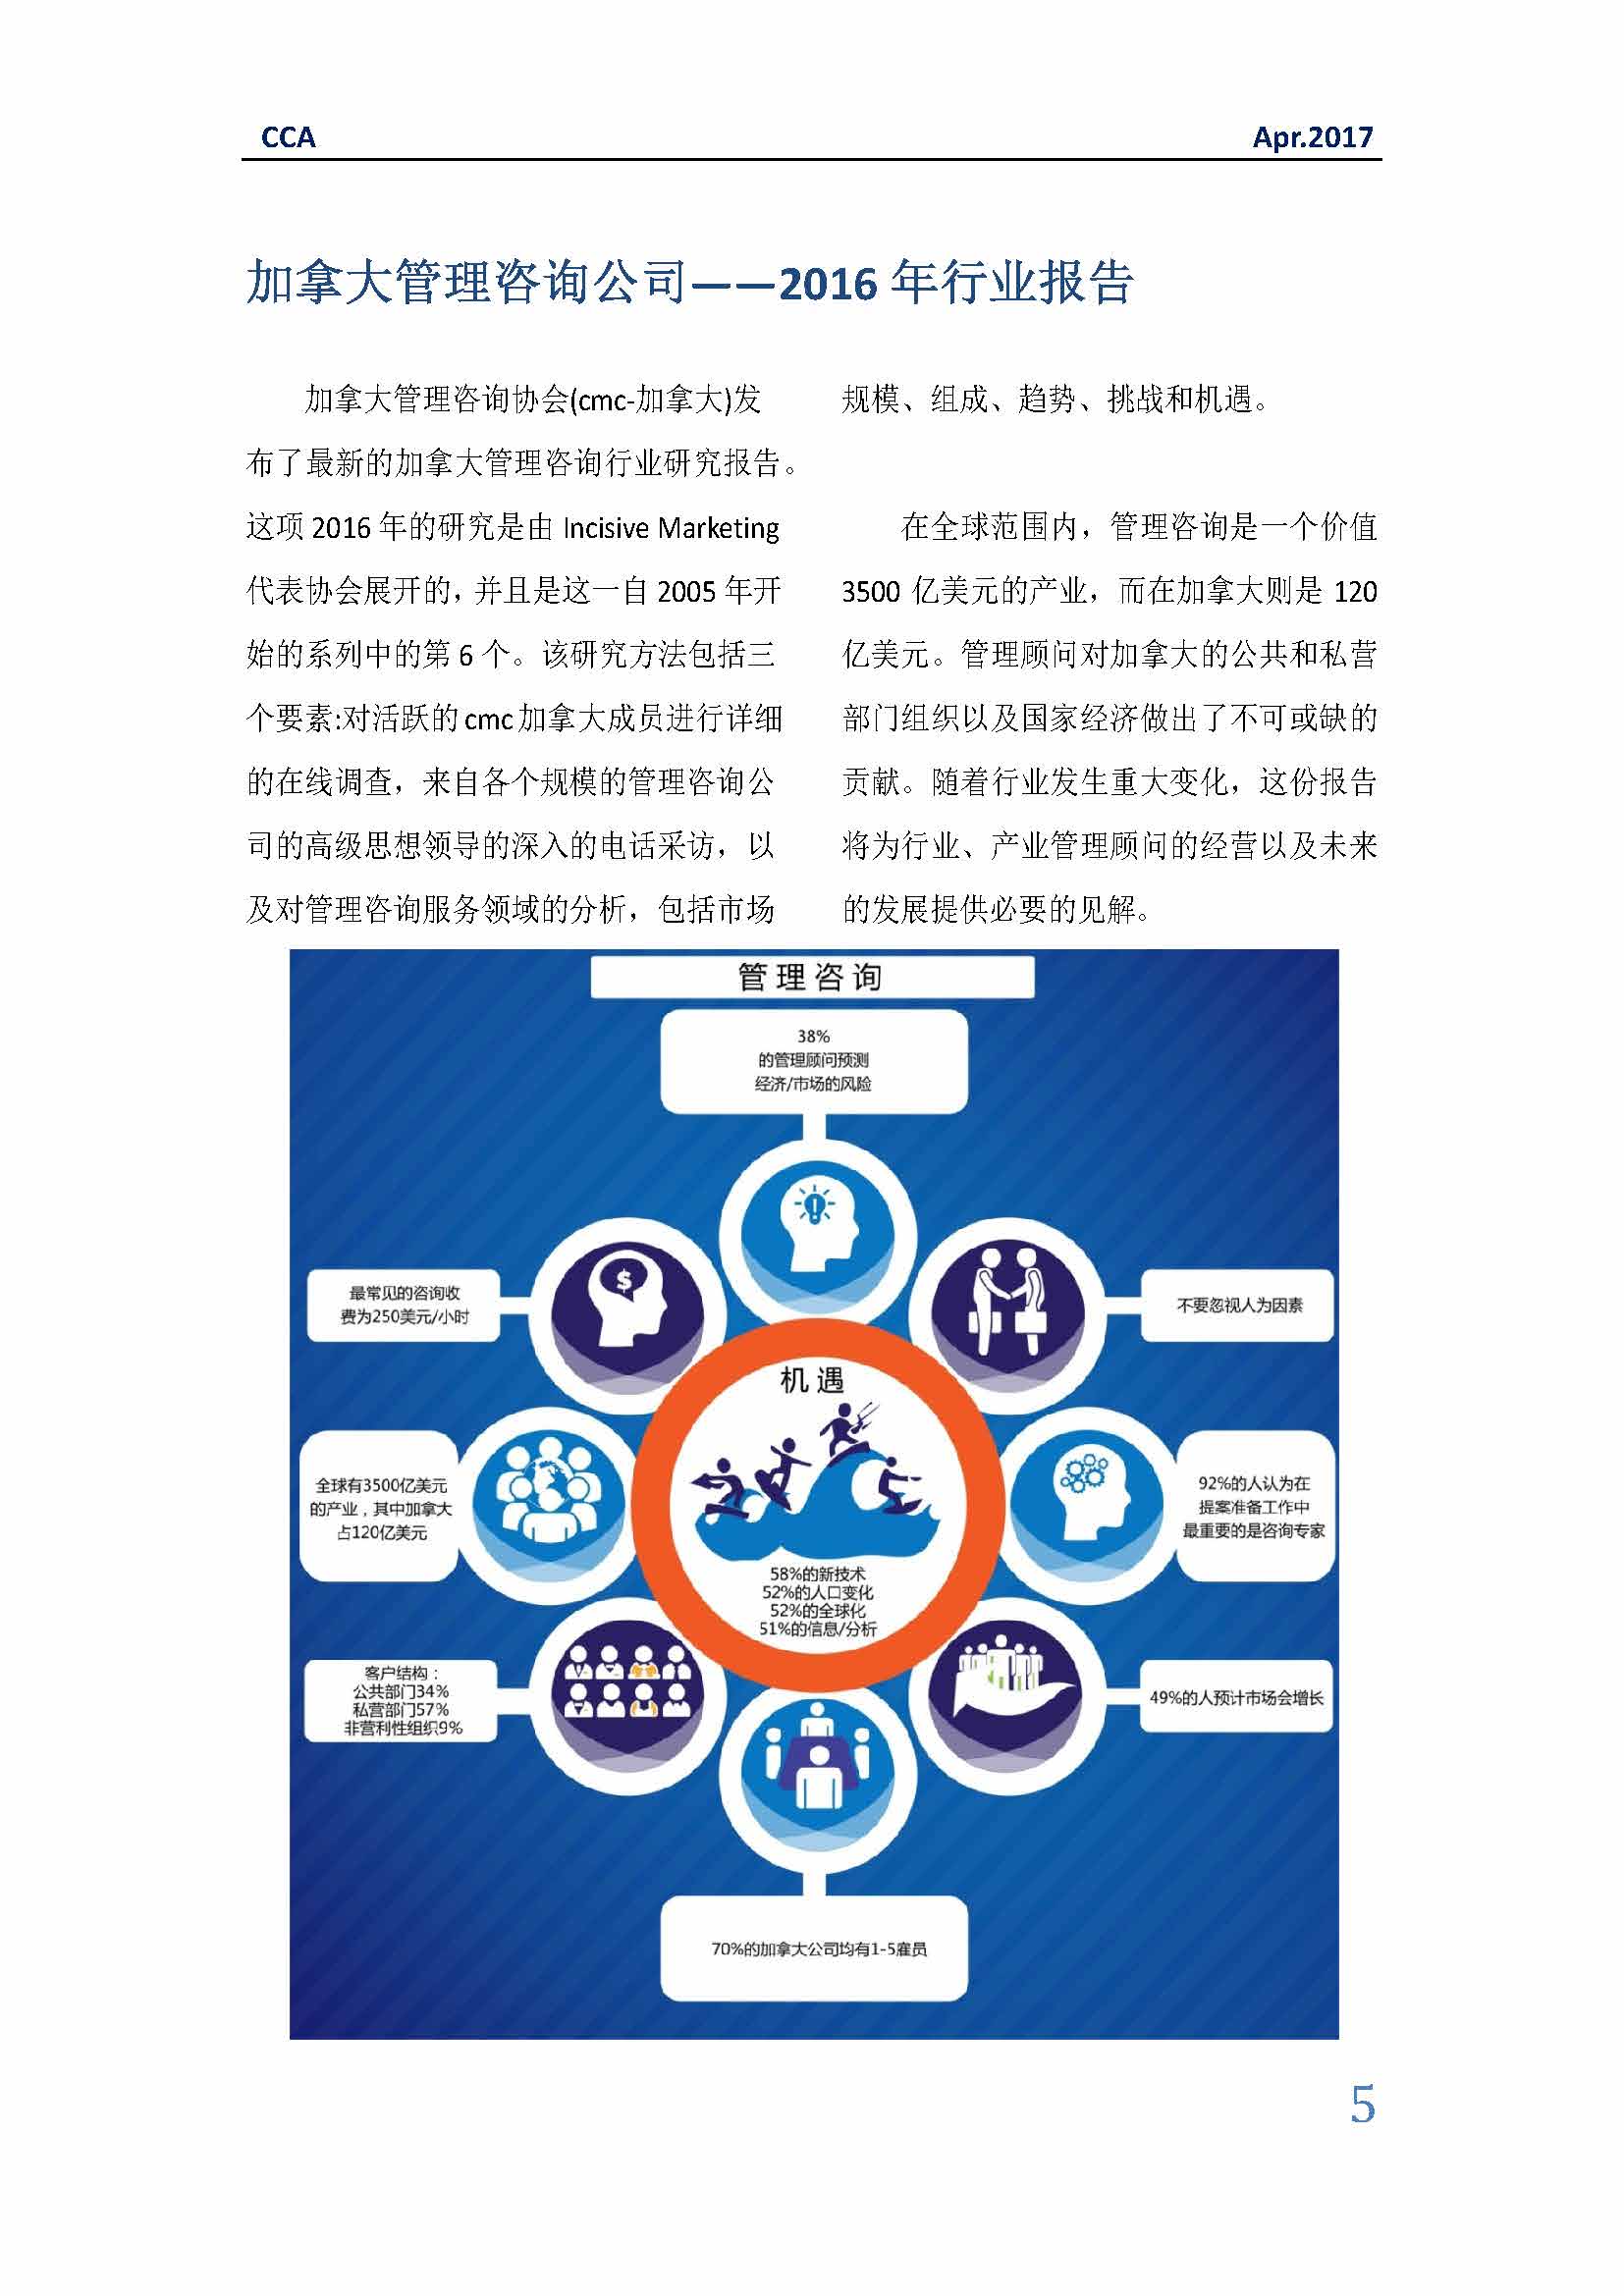 中国科技咨询协会国际快讯（第二十八期）_页面_05.jpg